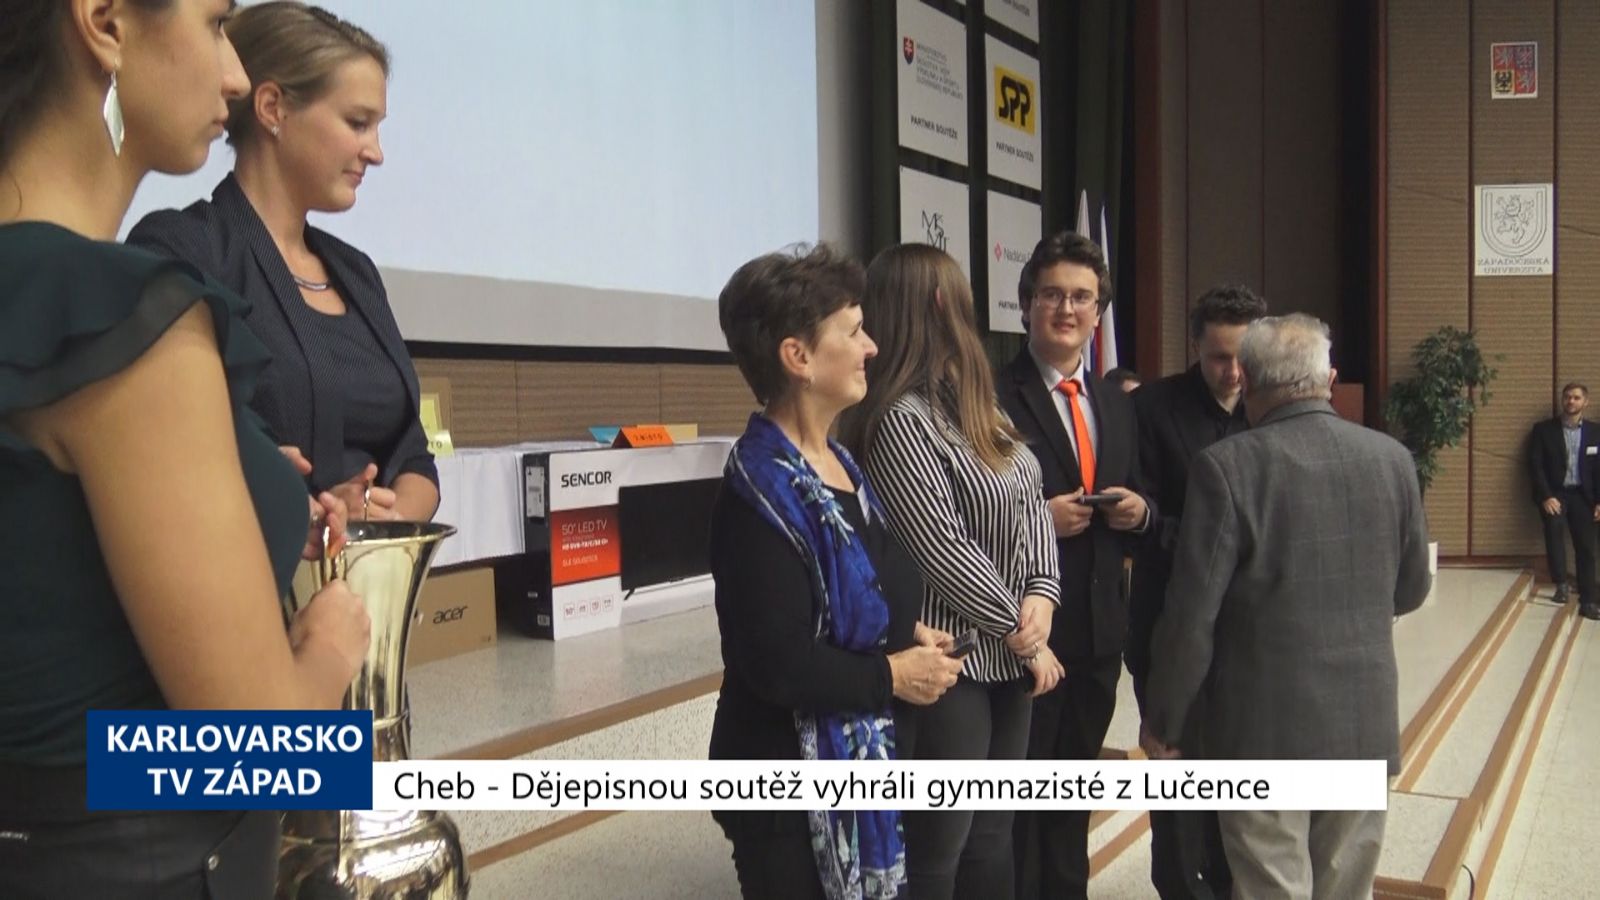 Cheb: Dějepisnou soutěž vyhráli gymnazisté z Lučence (TV Západ)